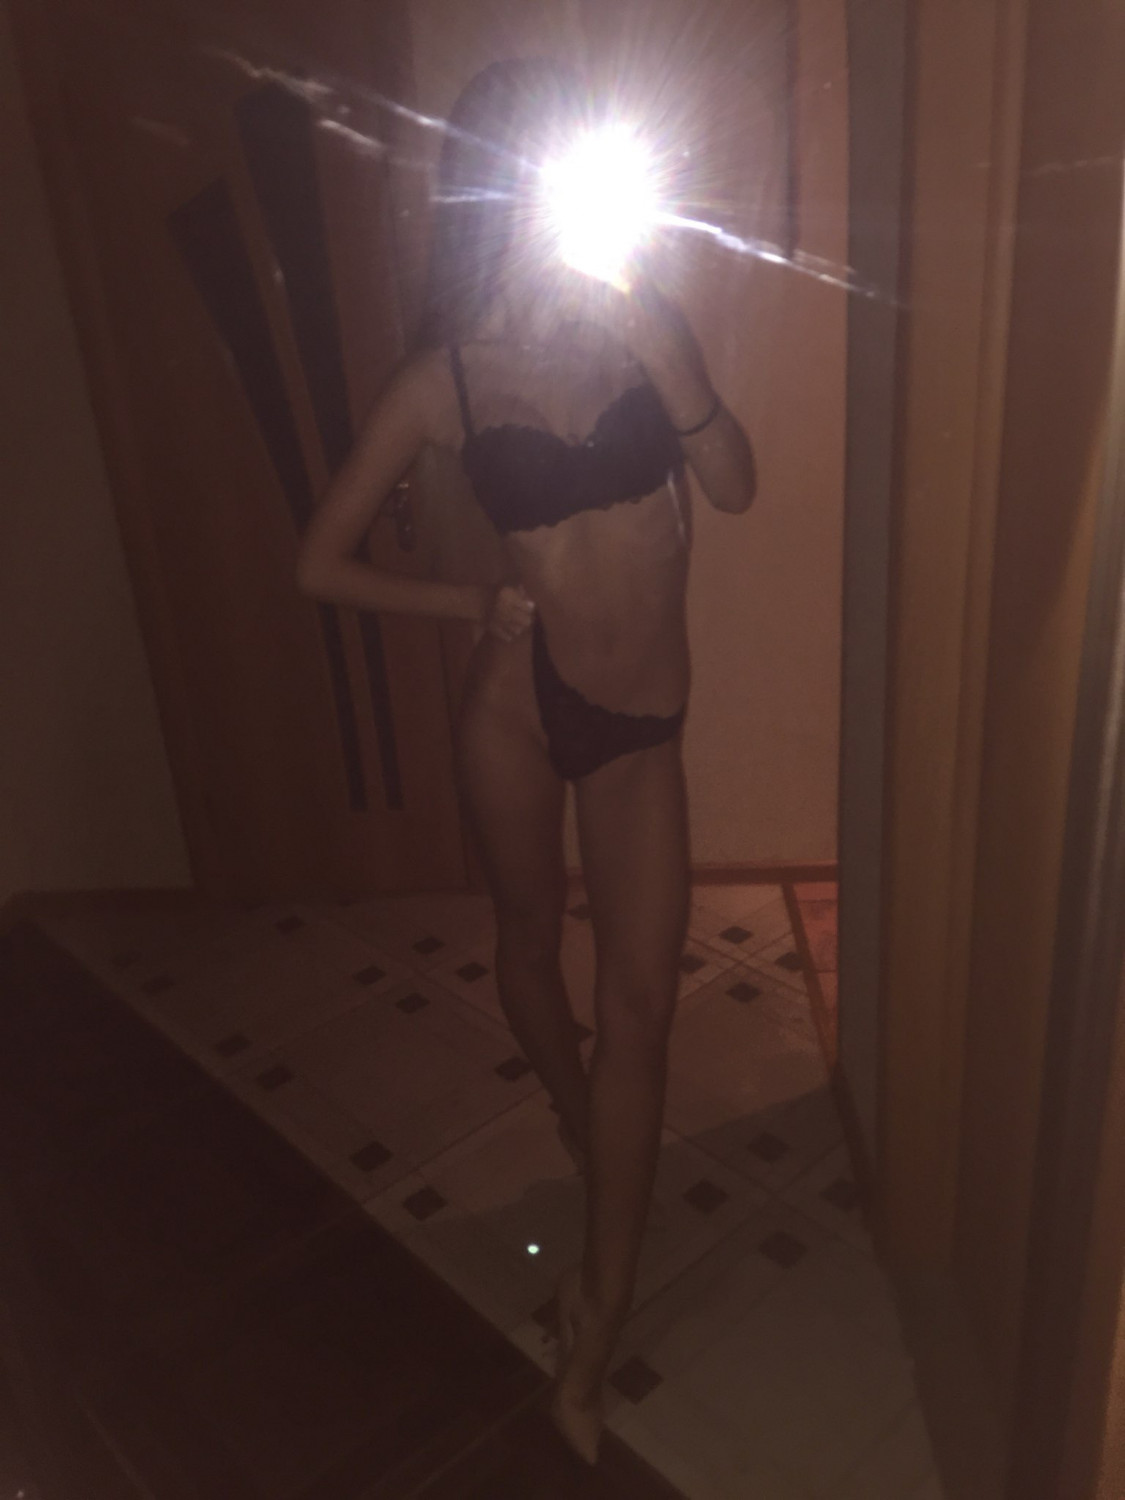 Leaked Nudes of Slim, Hot Blonde Teen - Porn image